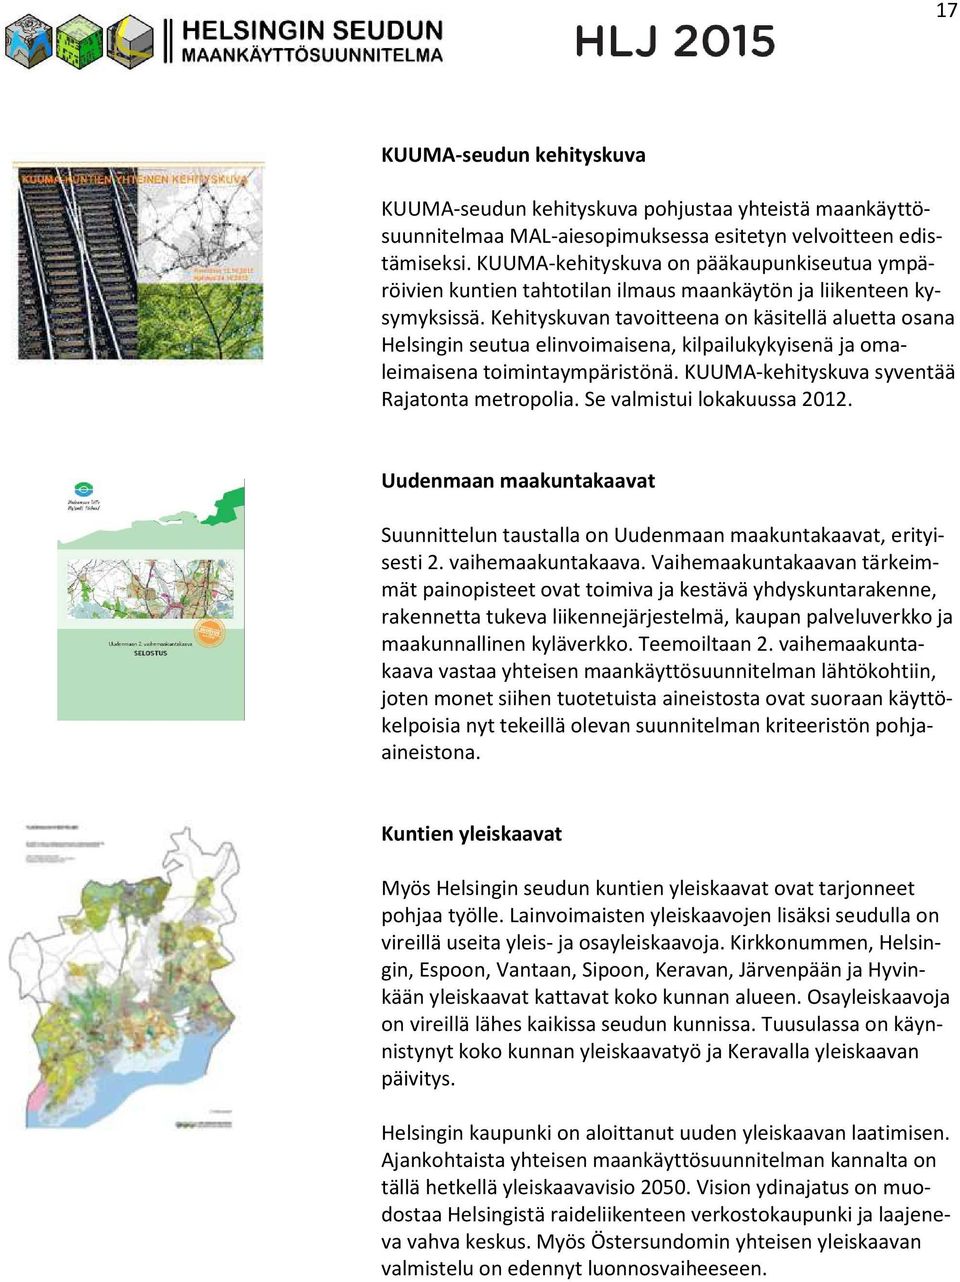 Kehityskuvan tavoitteena on käsitellä aluetta osana Helsingin seutua elinvoimaisena, kilpailukykyisenä ja omaleimaisena toimintaympäristönä. KUUMA-kehityskuva syventää Rajatonta metropolia.